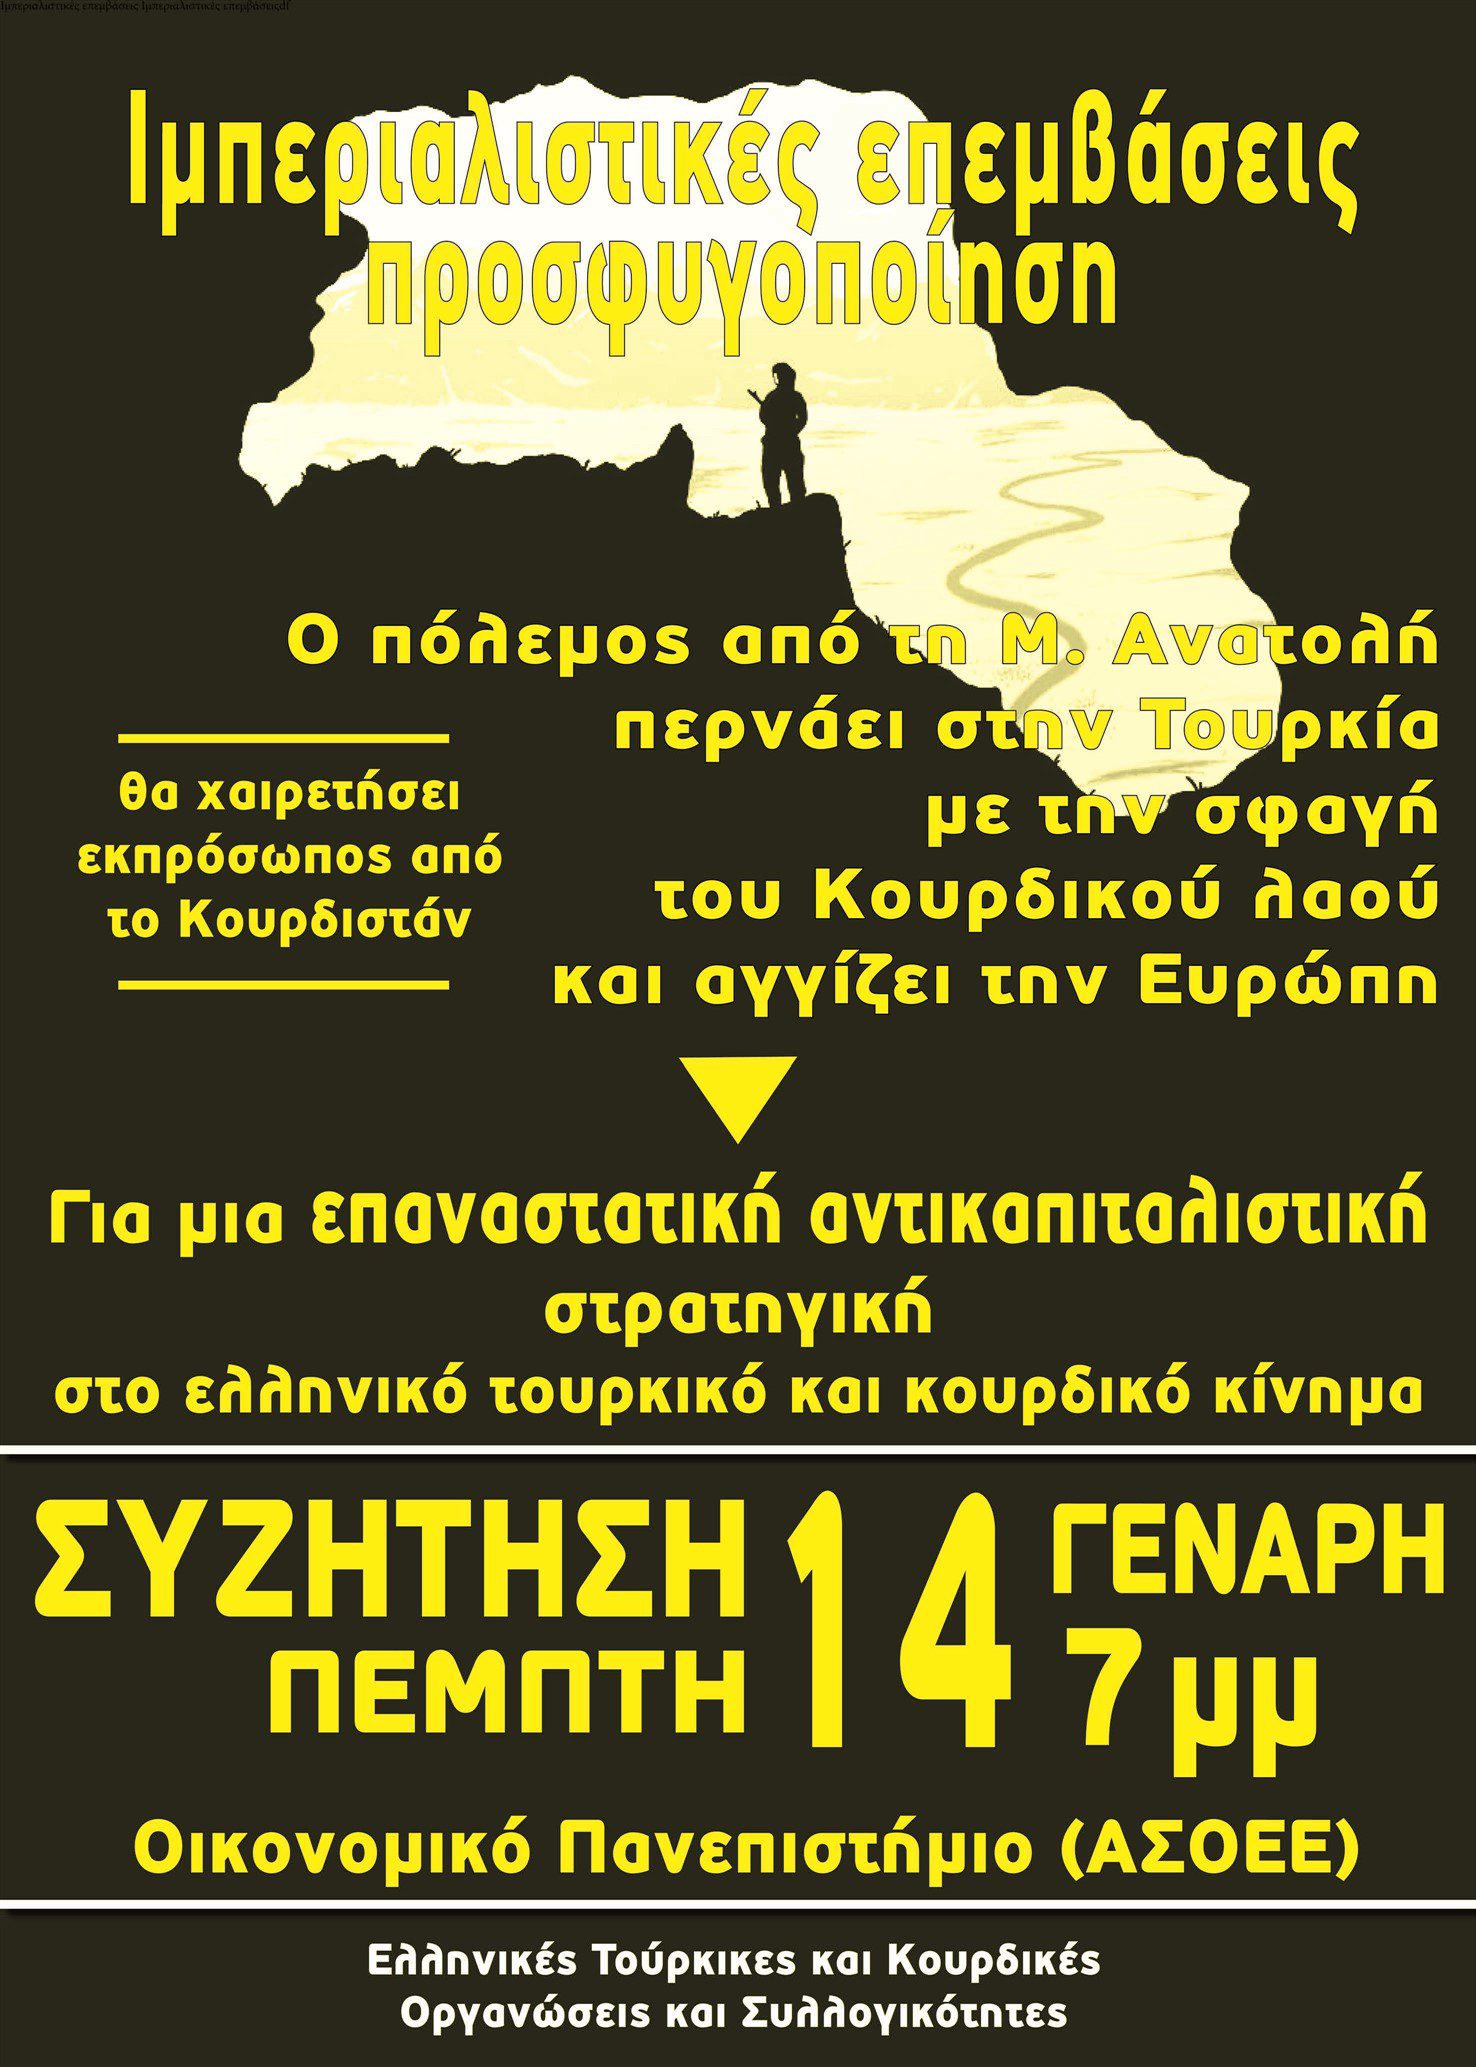 Πέμπτη 14/1, 19:00 στην ΑΣΟΕΕ. Εκδήλωση-Συζήτηση για τον πόλεμο στην Μ. Ανατολή και τη σφαγή των Κούρδων από την Τουρκία